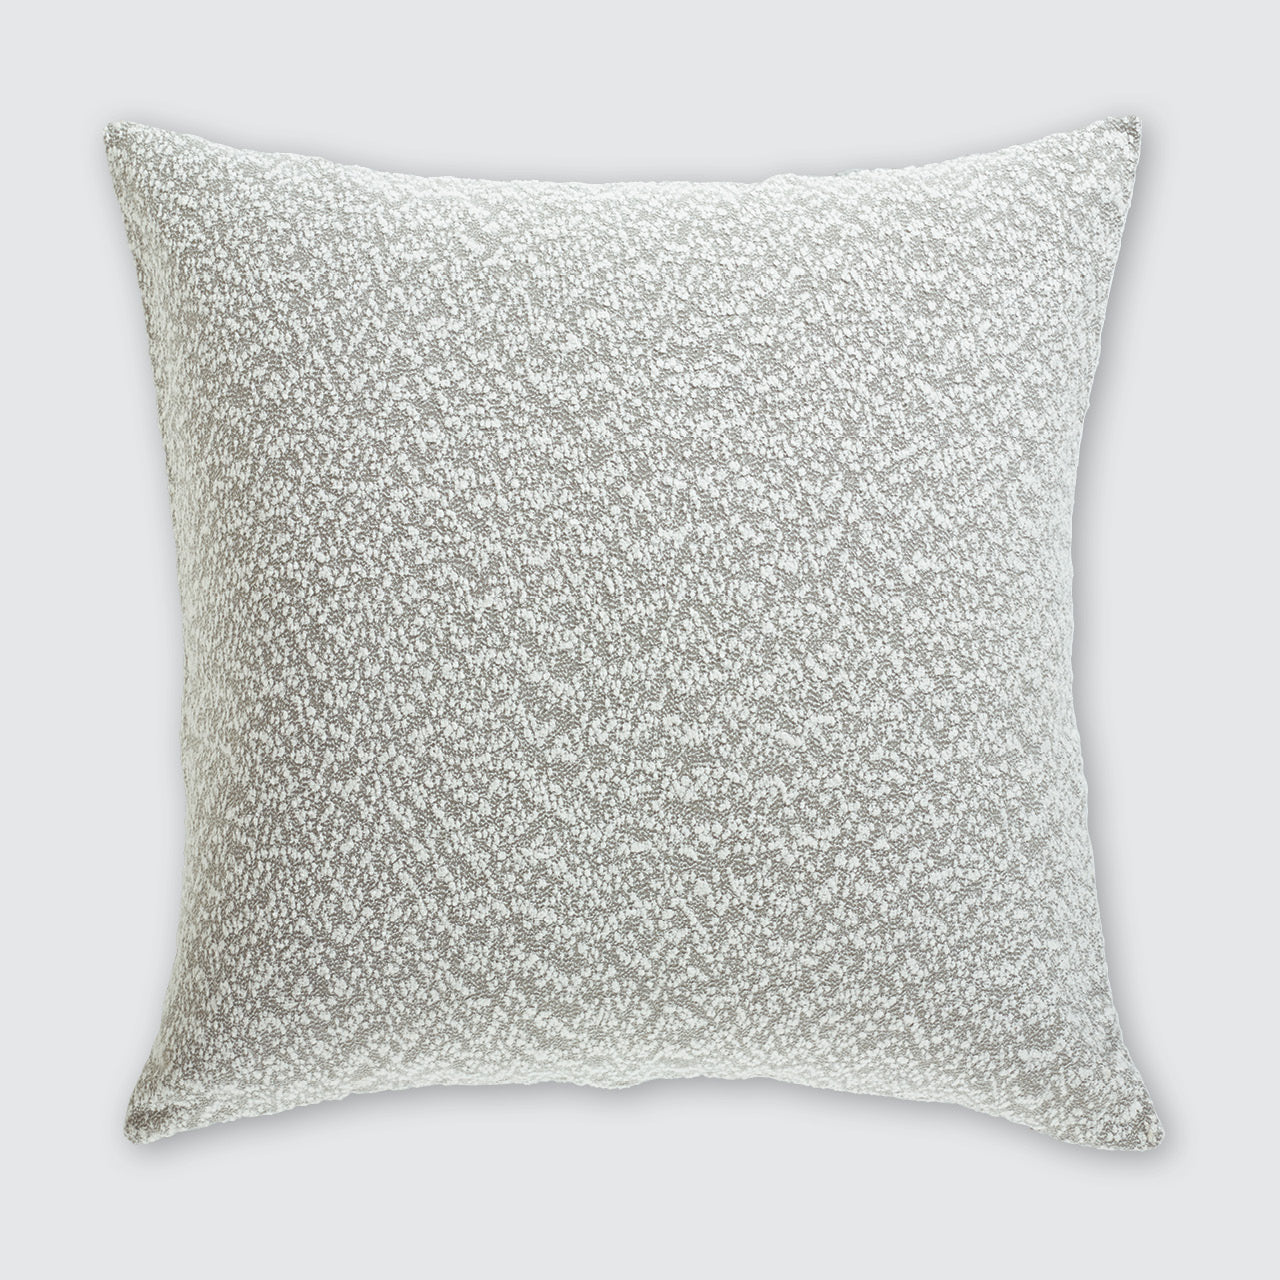 Georgia European Pillowcase on a white background